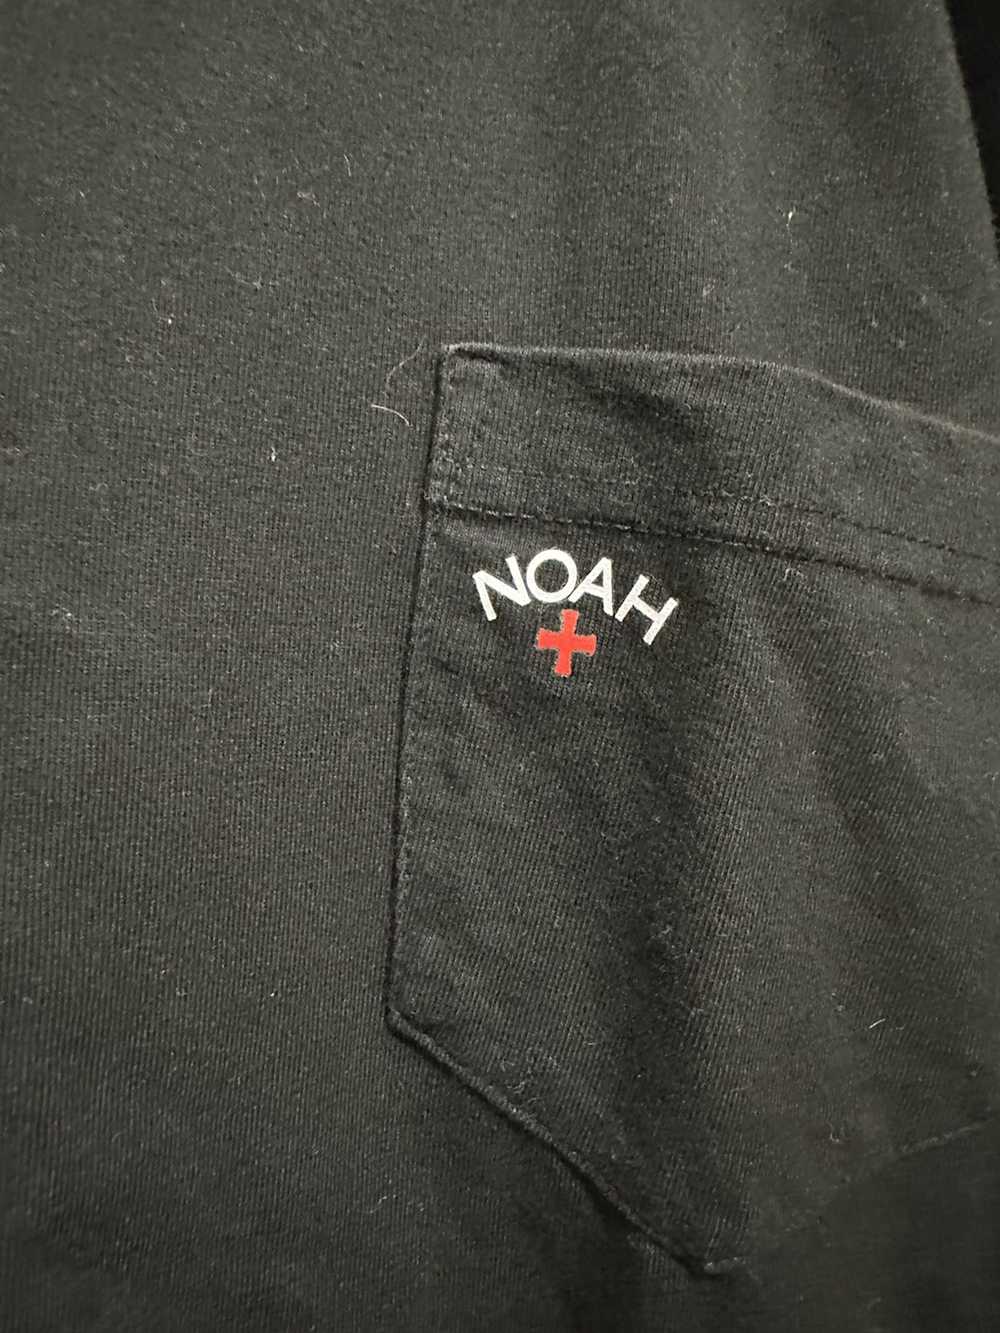 Noah Noah Pocket Long Sleeve - image 2